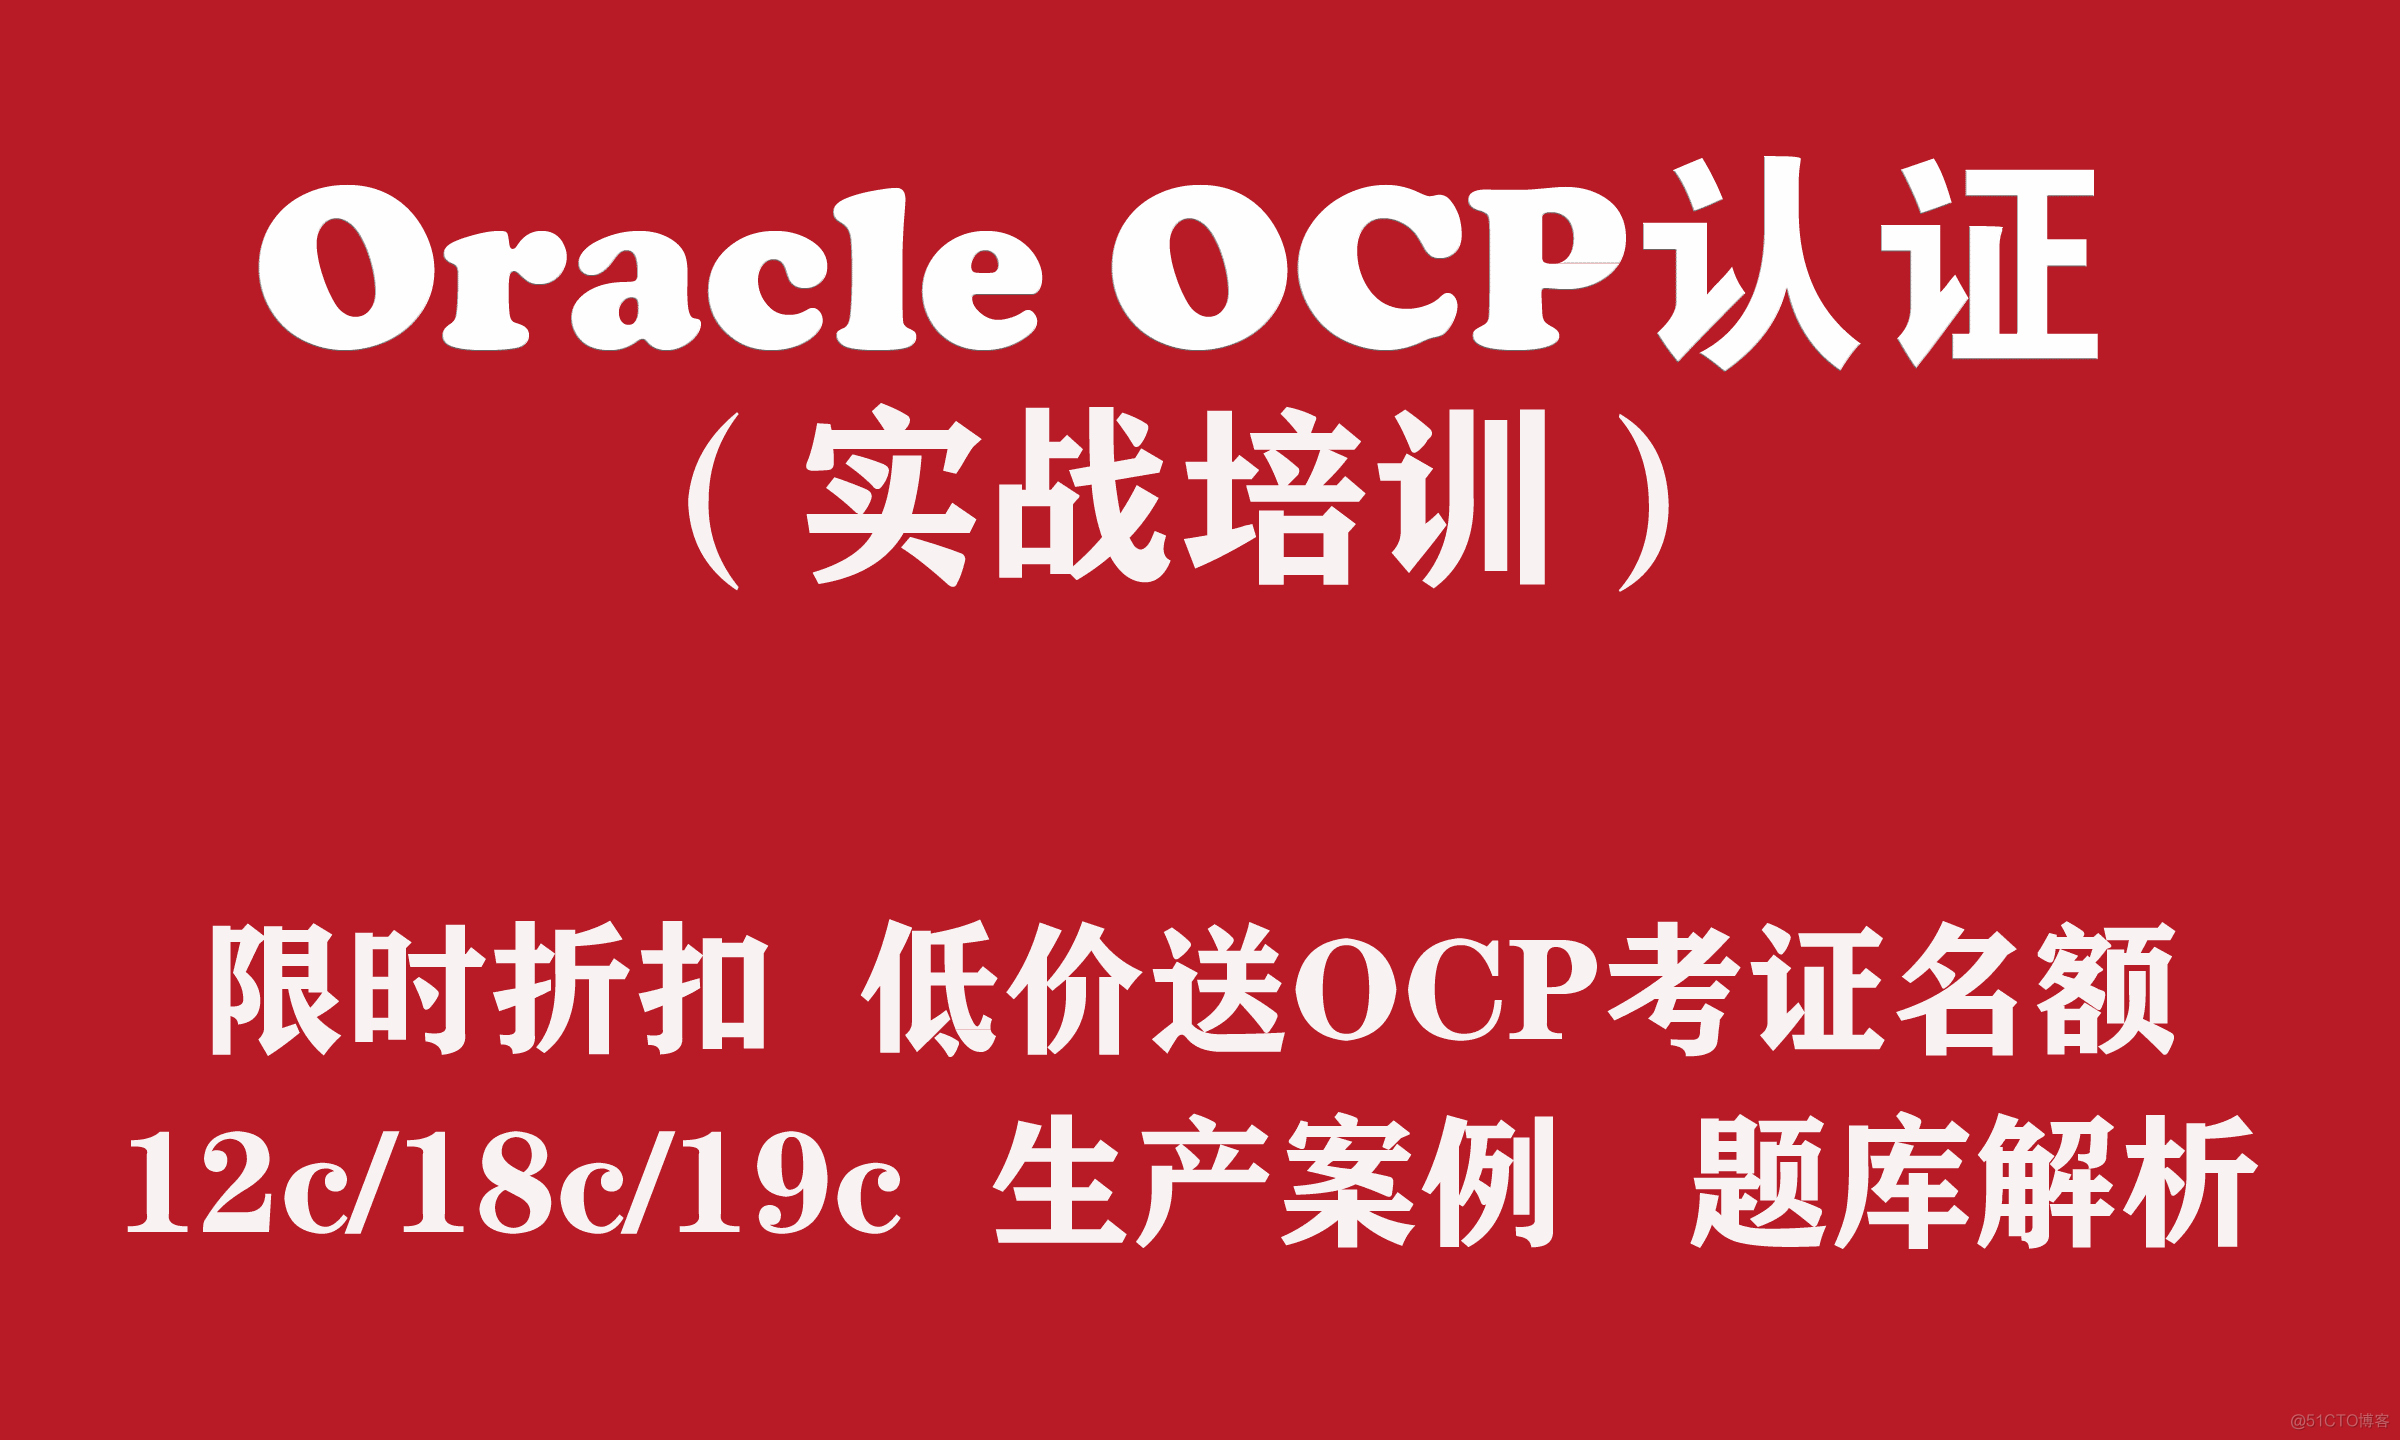 OCP培训 Oracle 12c/18c/19c OCP认证实战培训【低价送OCP优惠名额】_ocp培训